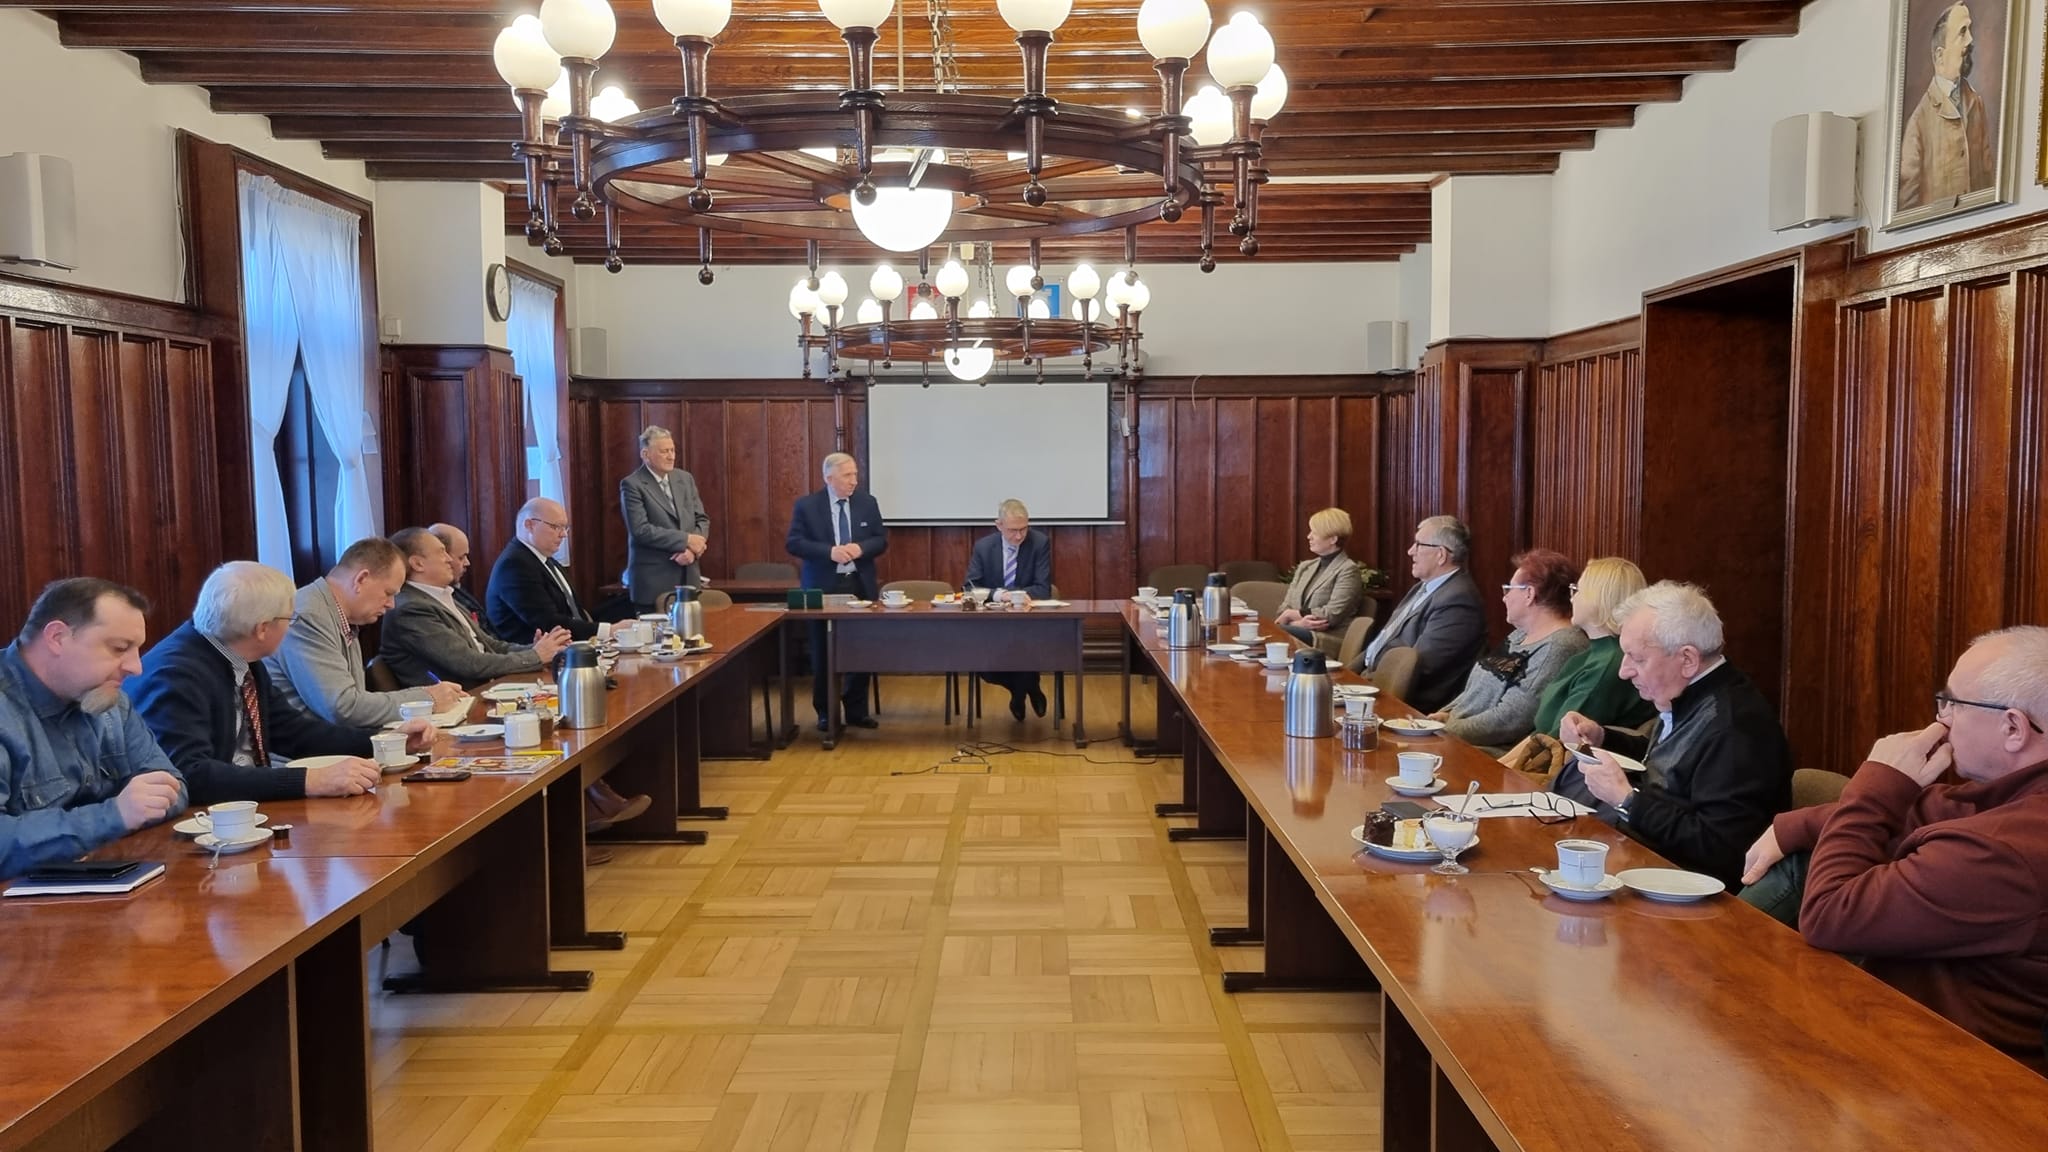 Spotkanie Burmistrza Miasta i Gminy Pleszew z prezesami Rodzinnych Ogródków Działkowych w pleszewskim ratuszu